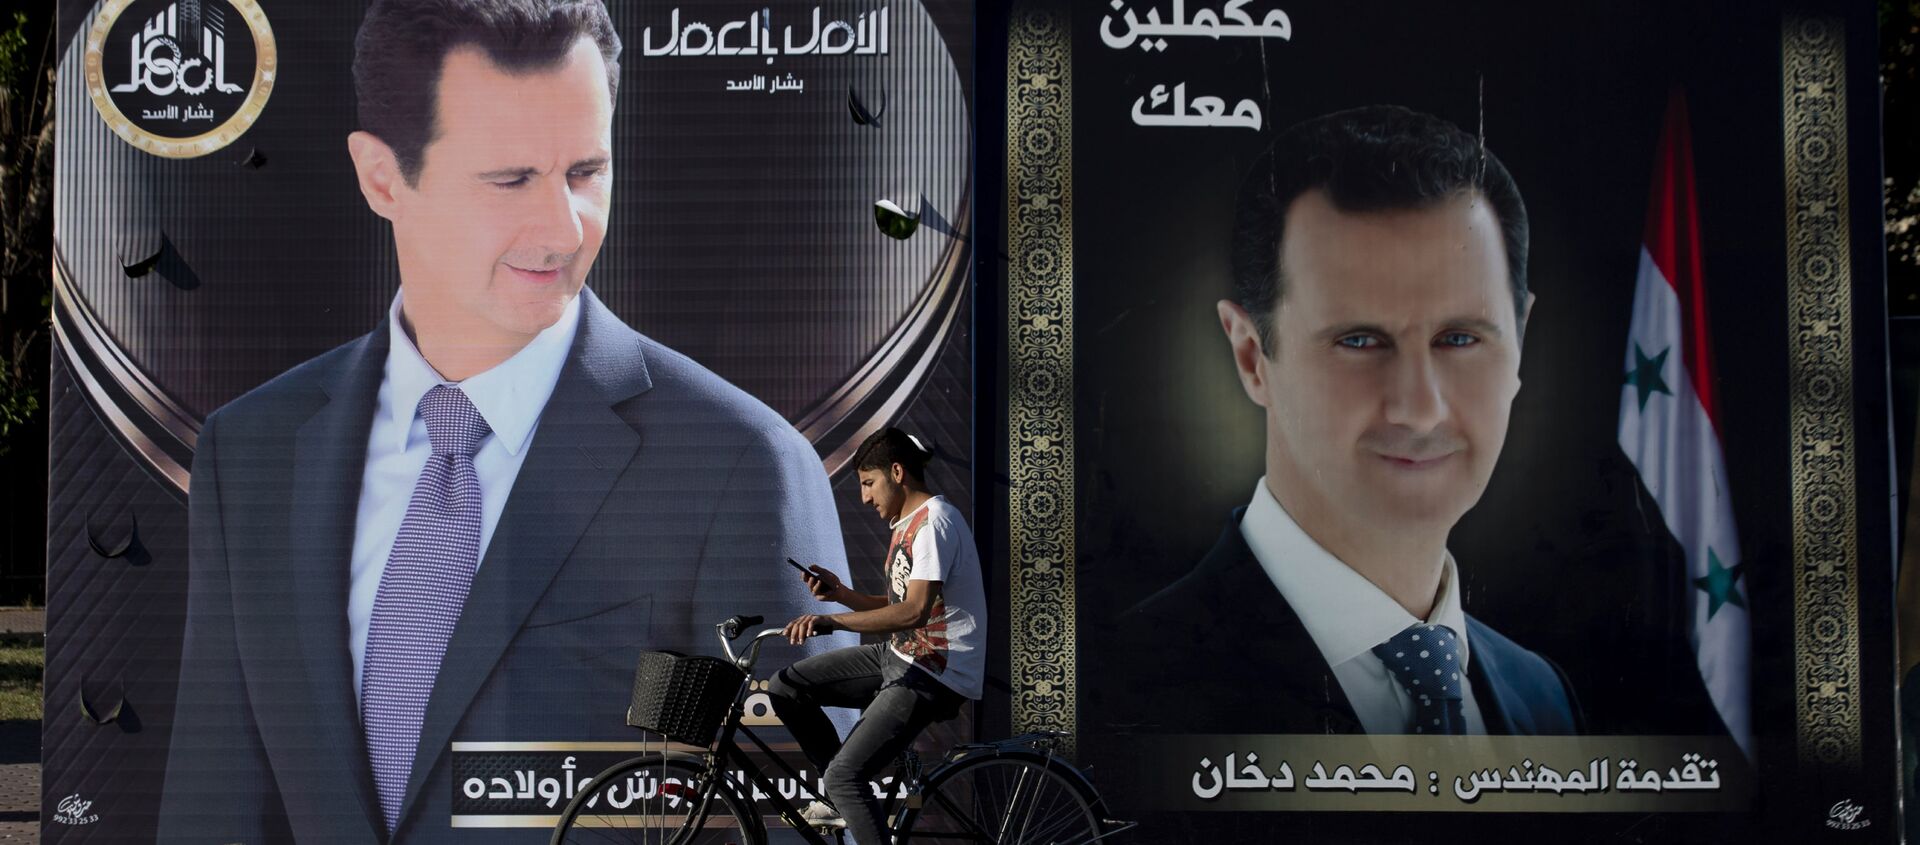 Рекламные плакаты президента Башара Асада на улице в Дамаске - Sputnik Южная Осетия, 1920, 25.05.2021